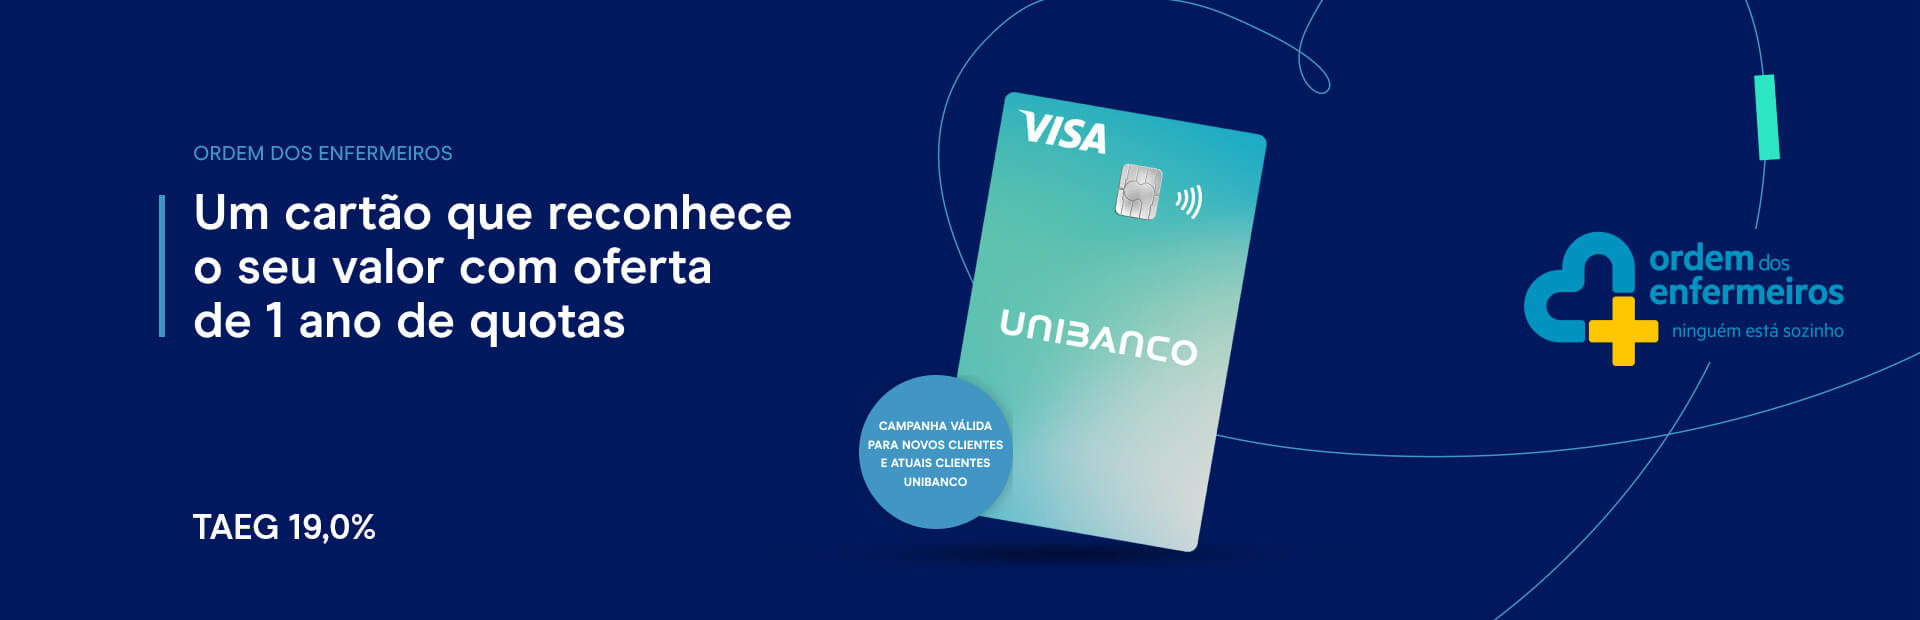 Cartão de crédito Unibanco - Campanha promocional Ordem dos Enfermeiros